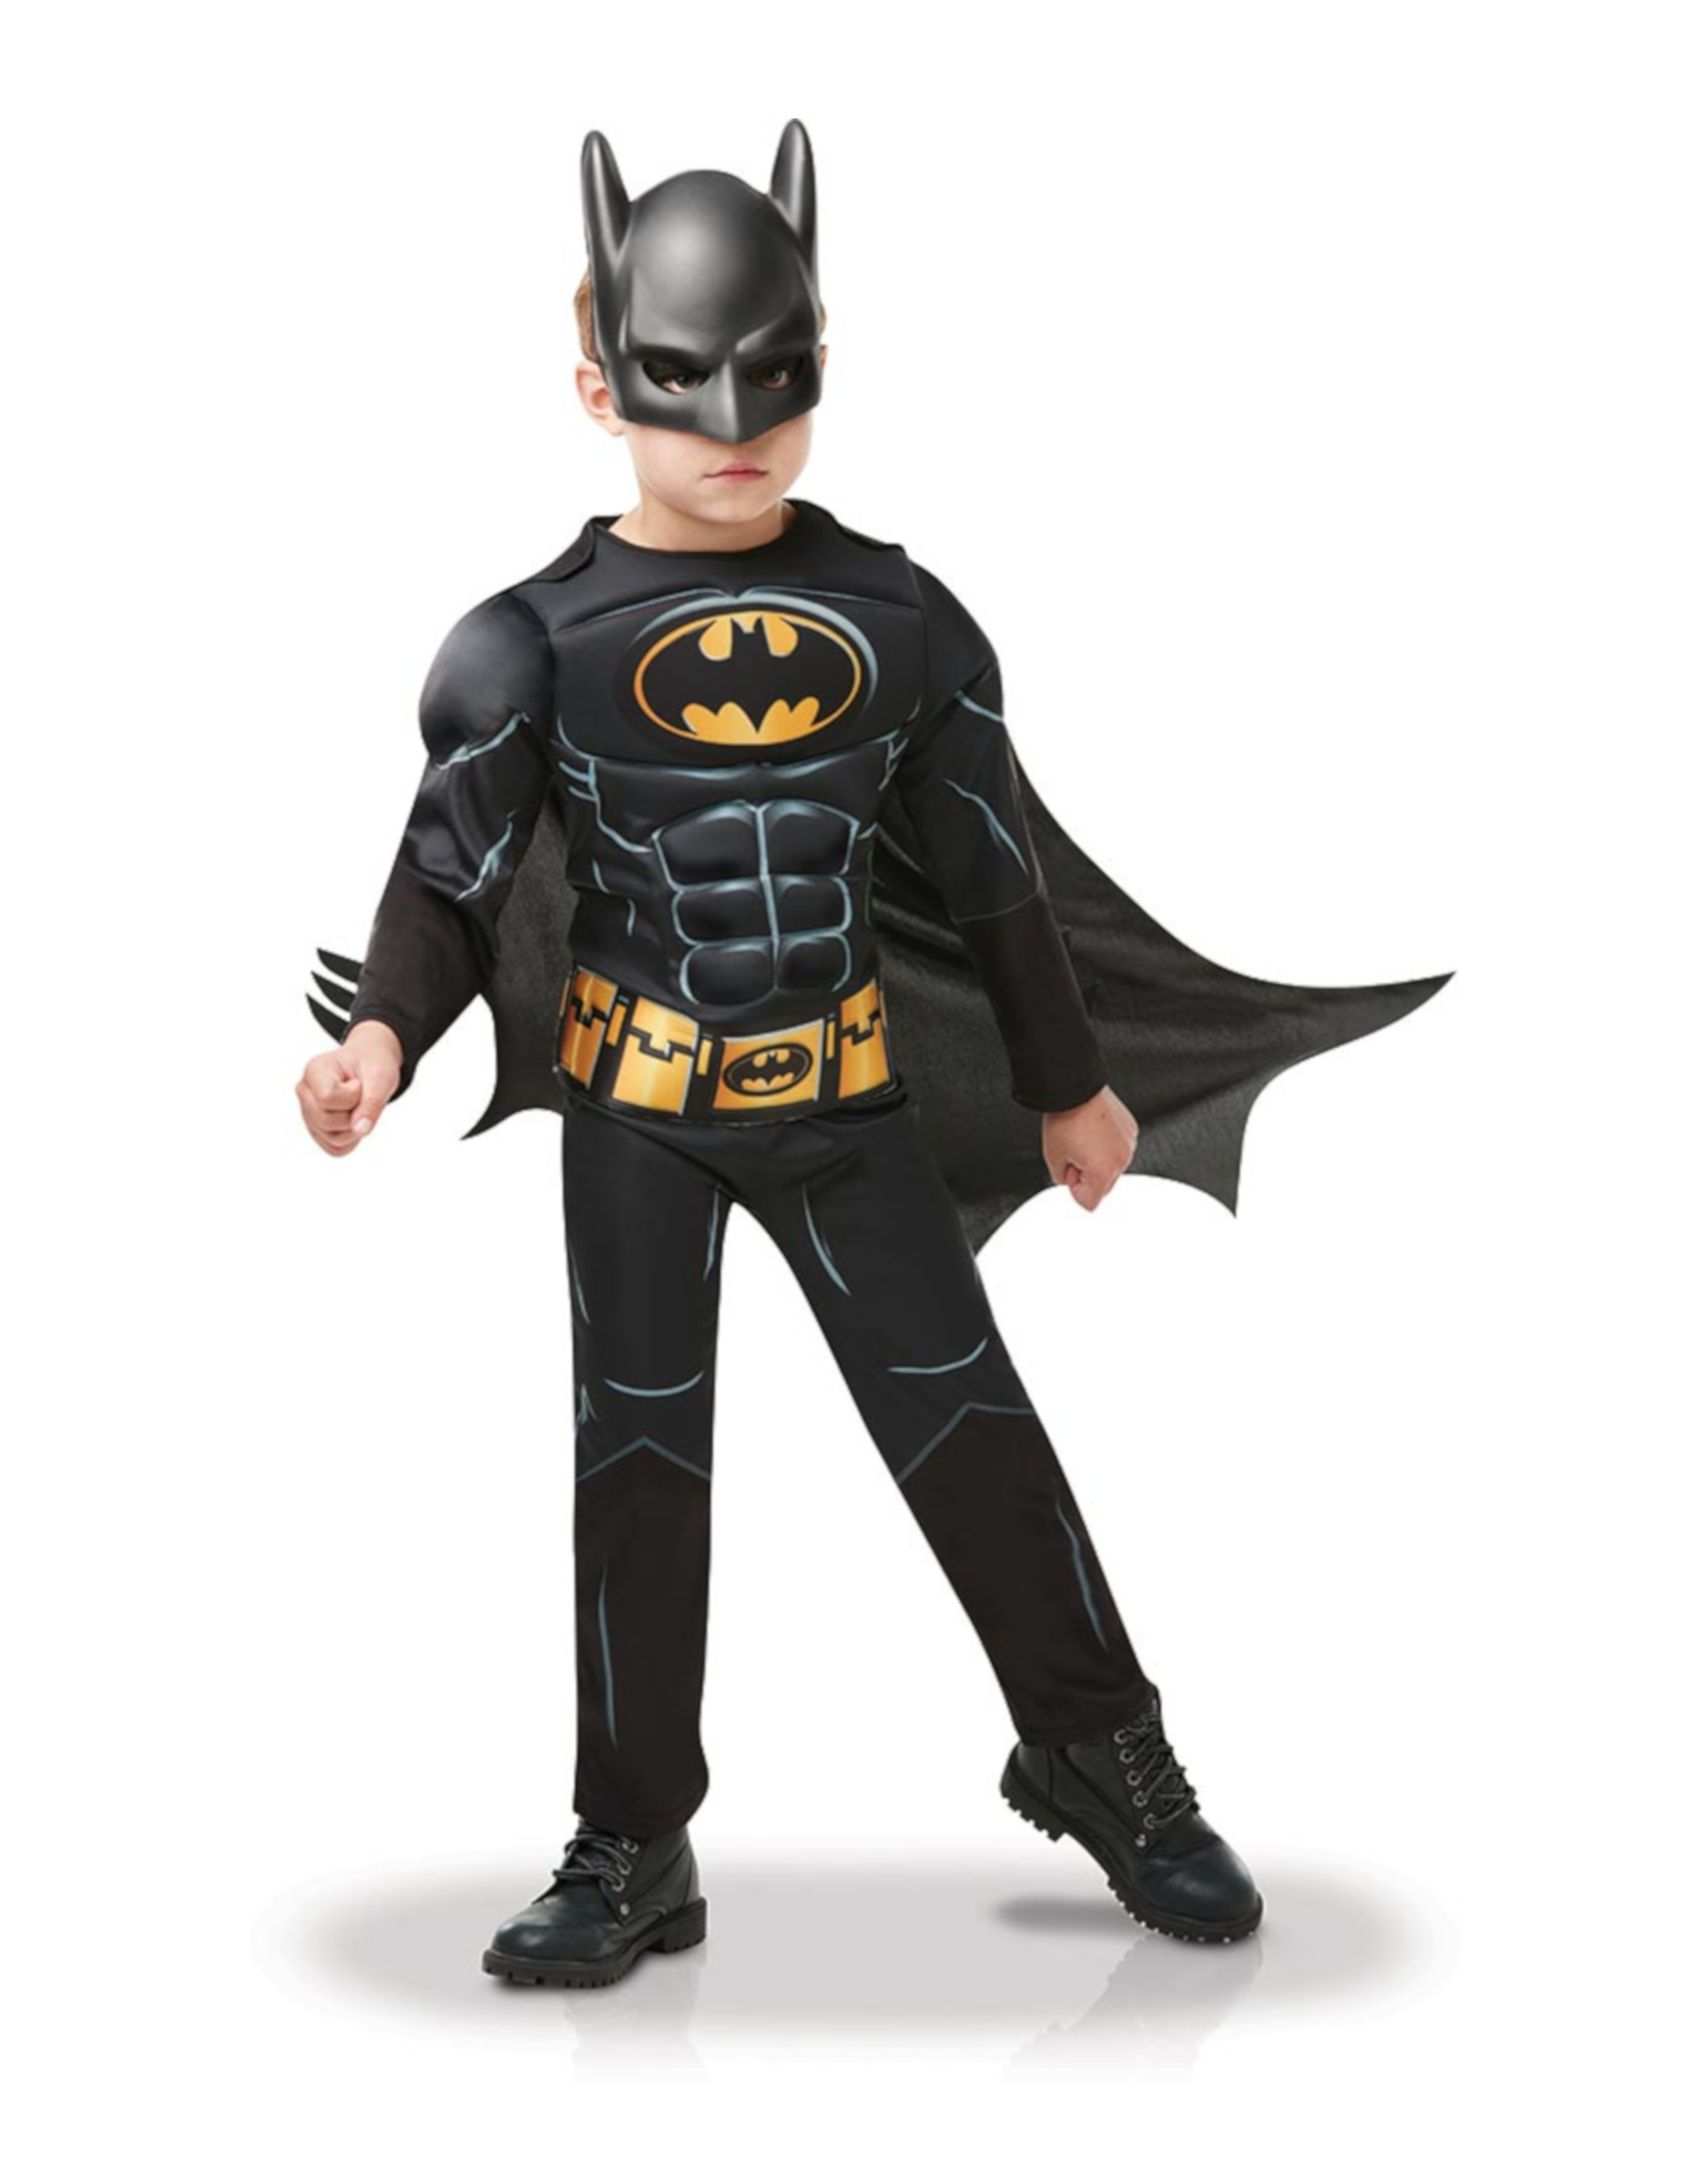 Batman-Kostüm für Jungen mit Maske Deluxe Faschingskostüm schwarz-gelb von RUBIES FRANCE